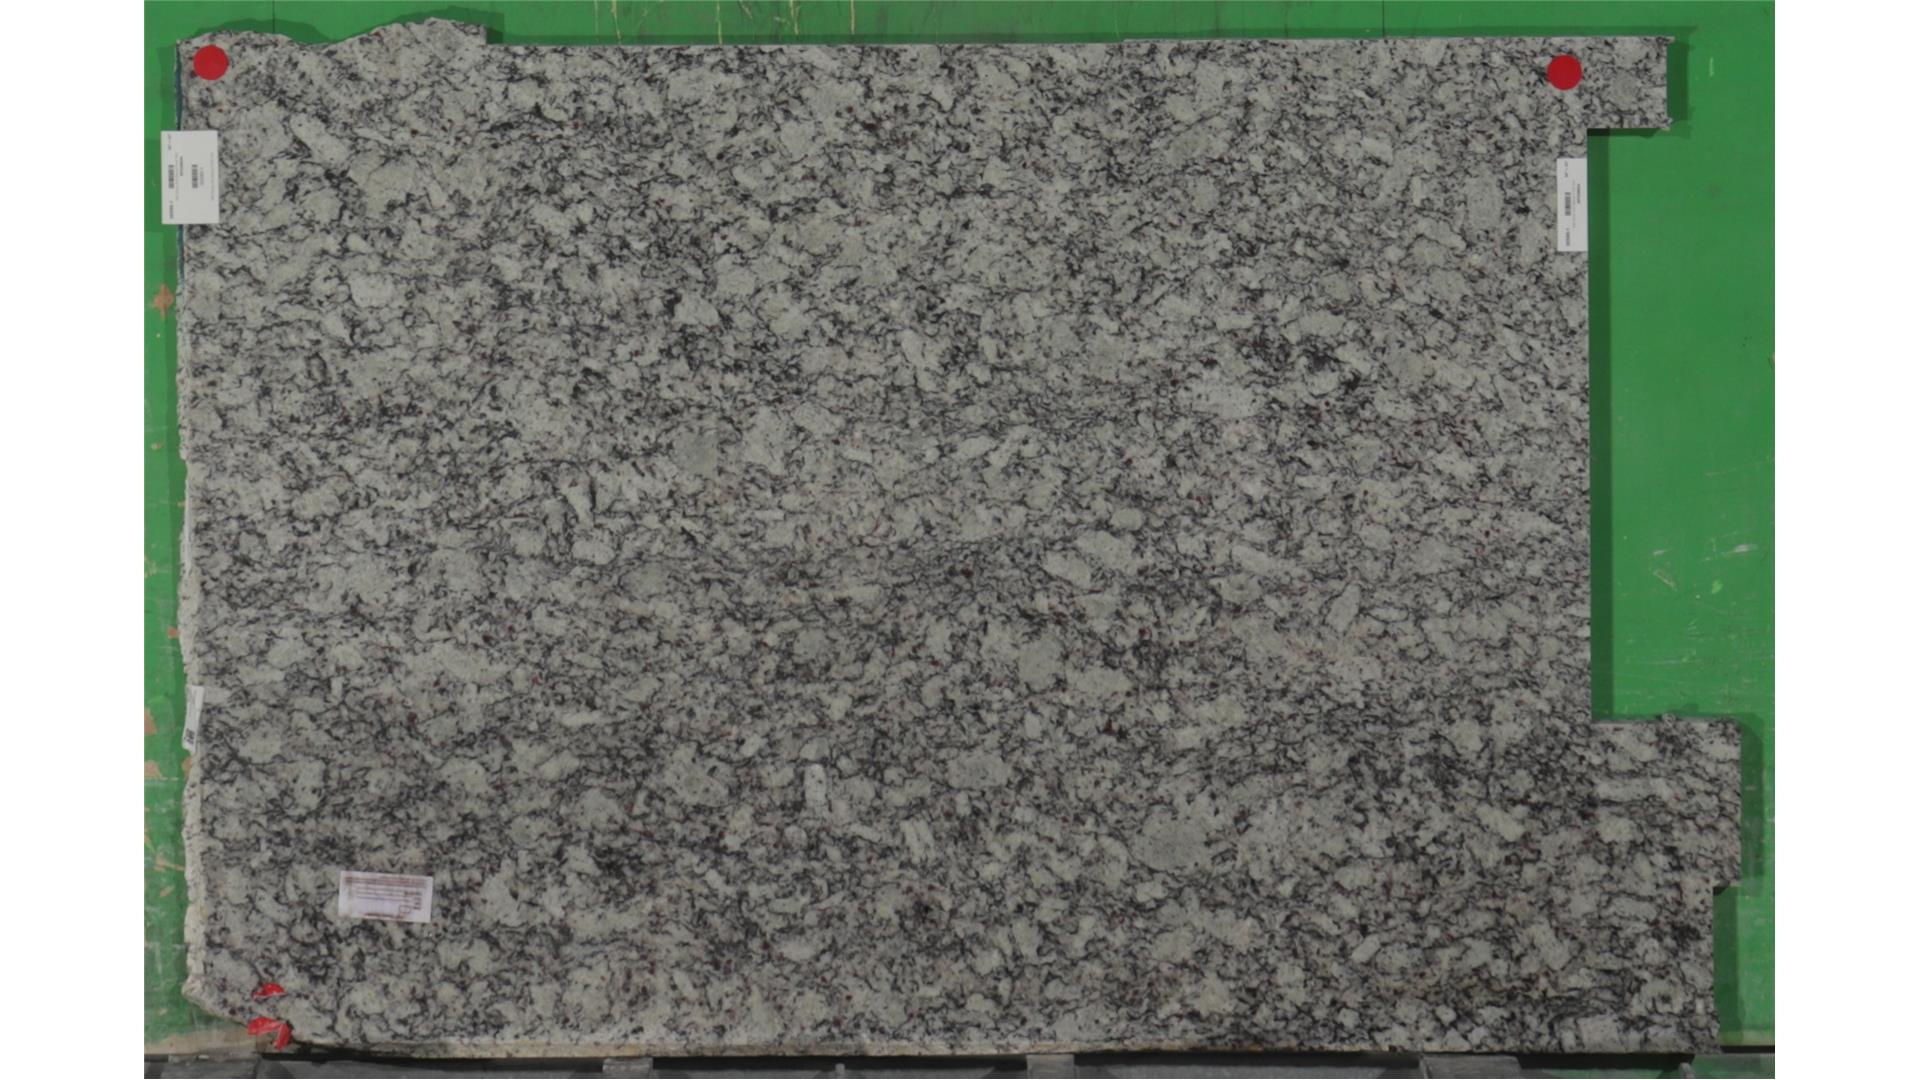 Bianco Frost 3cm MSI Stone (AZ) Slabs